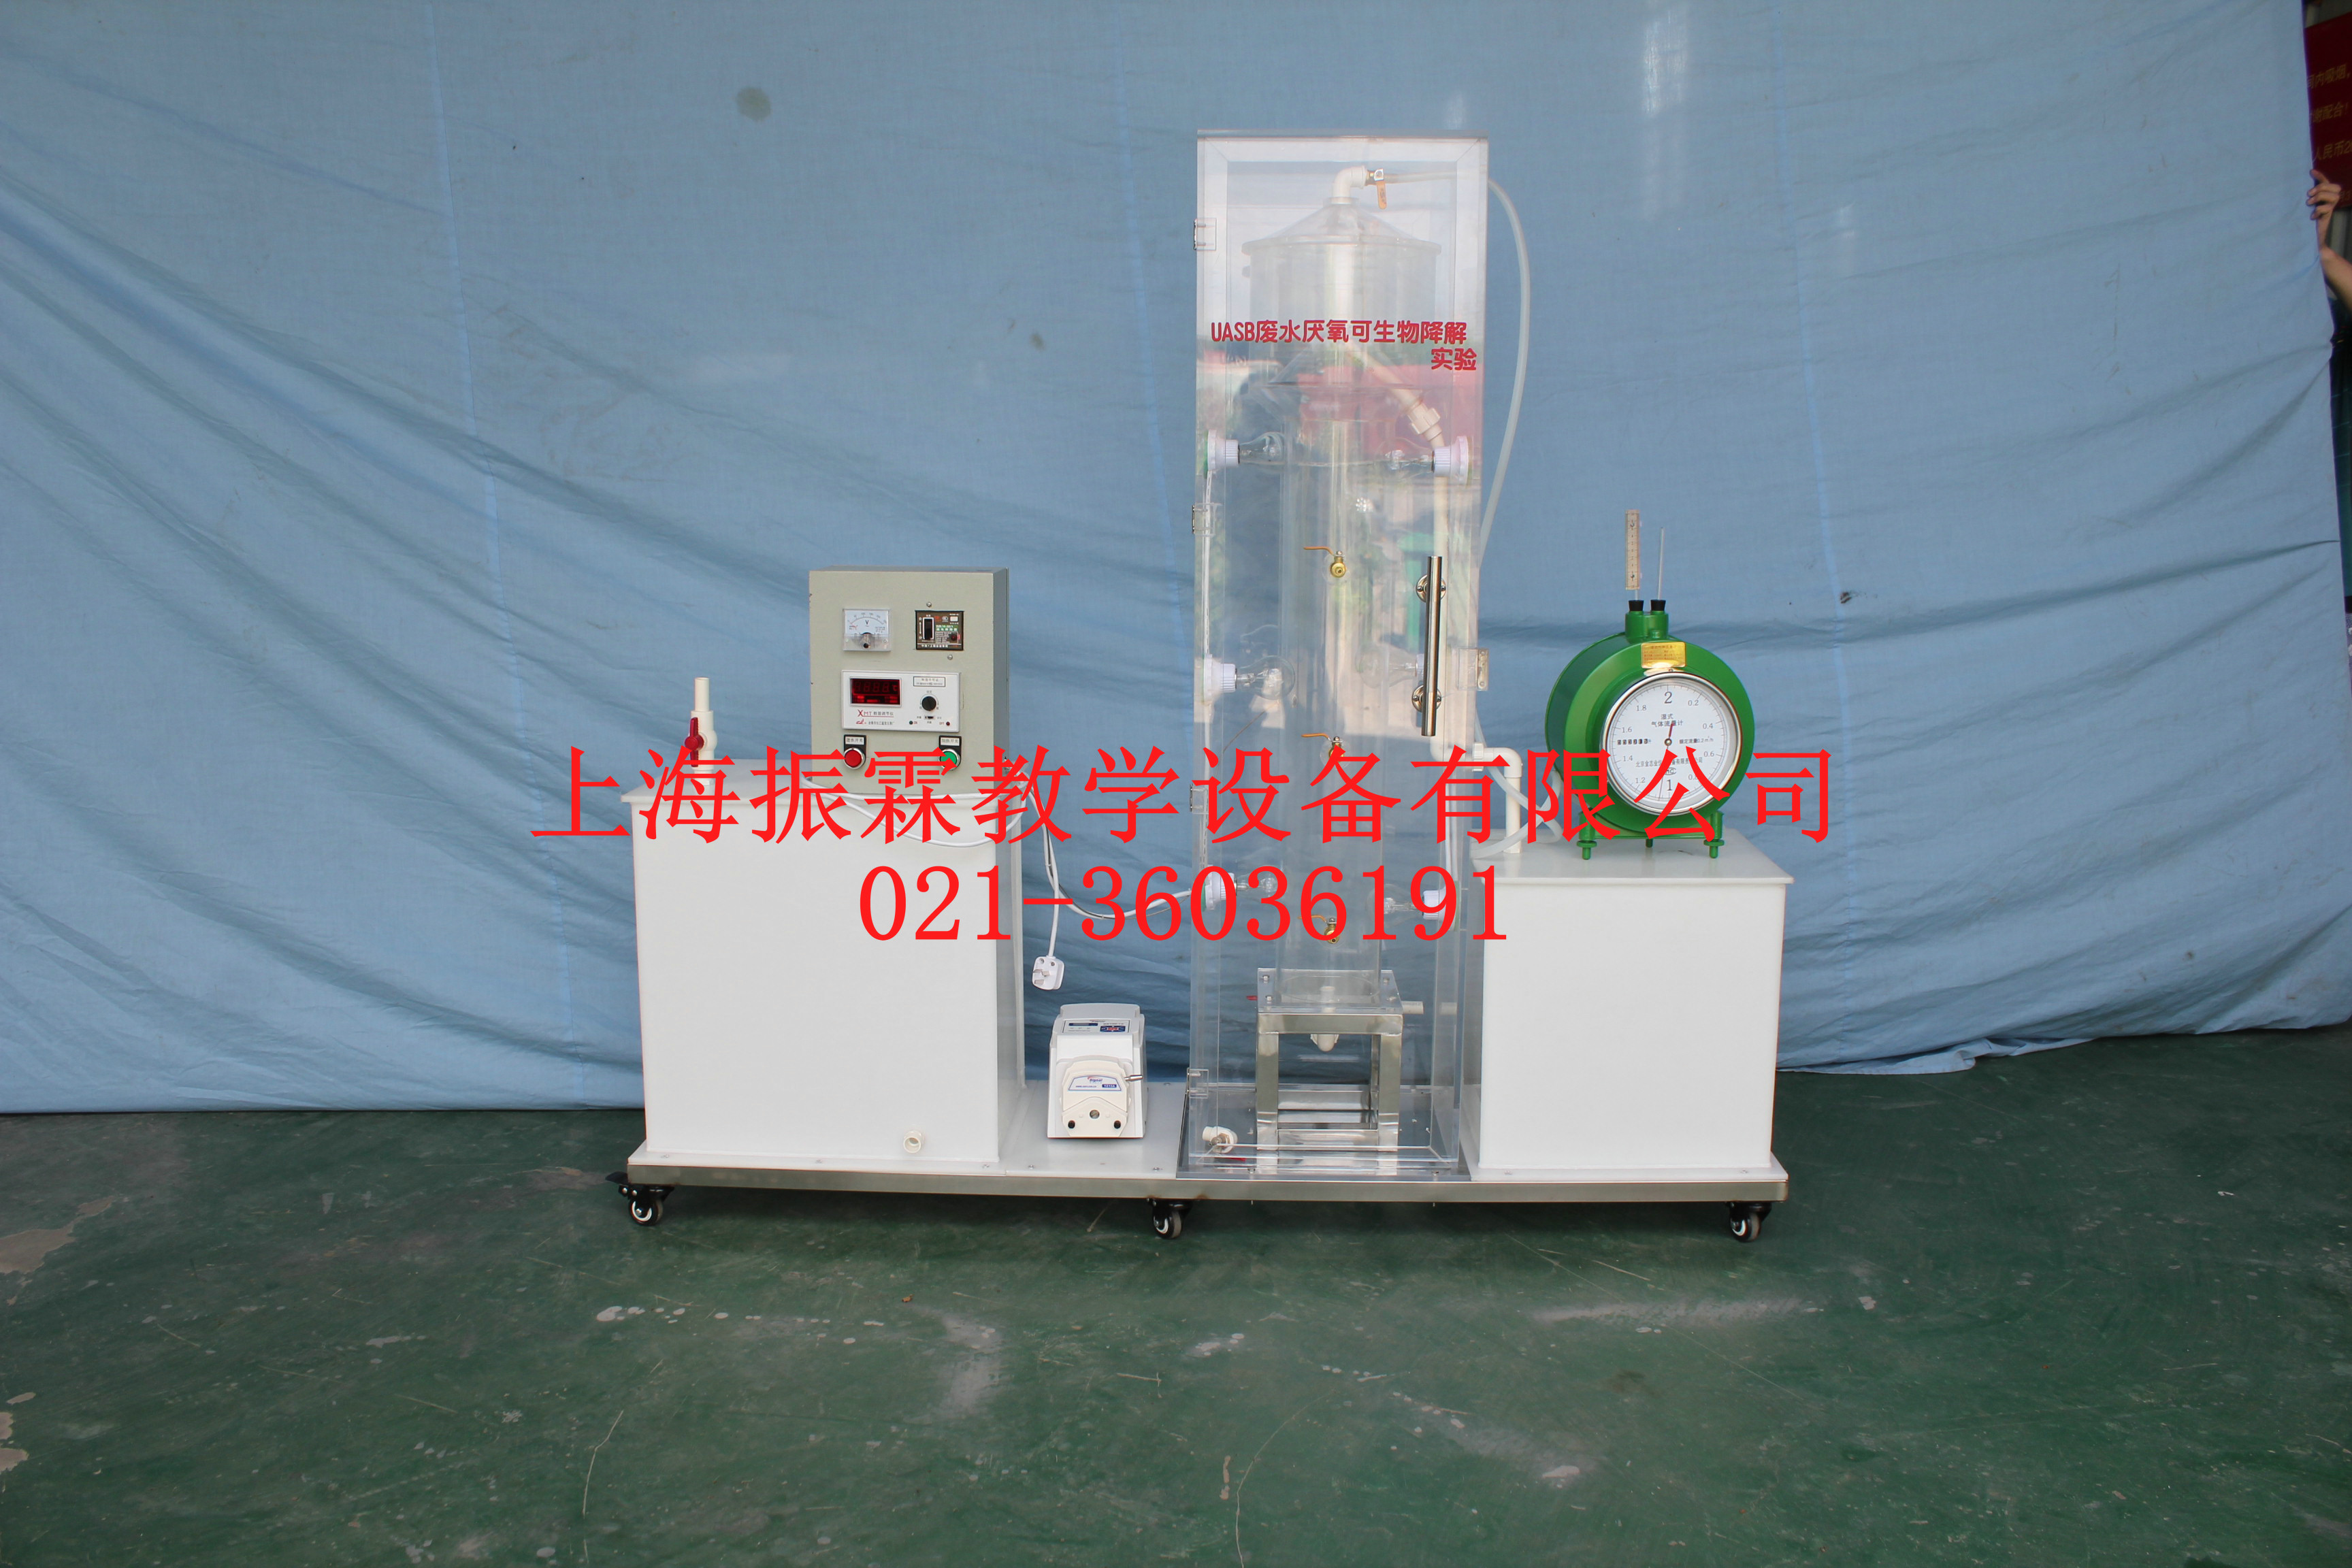 UASB废水厌氧可生物降解实验装置,环境工程实验设备--上海振霖公司